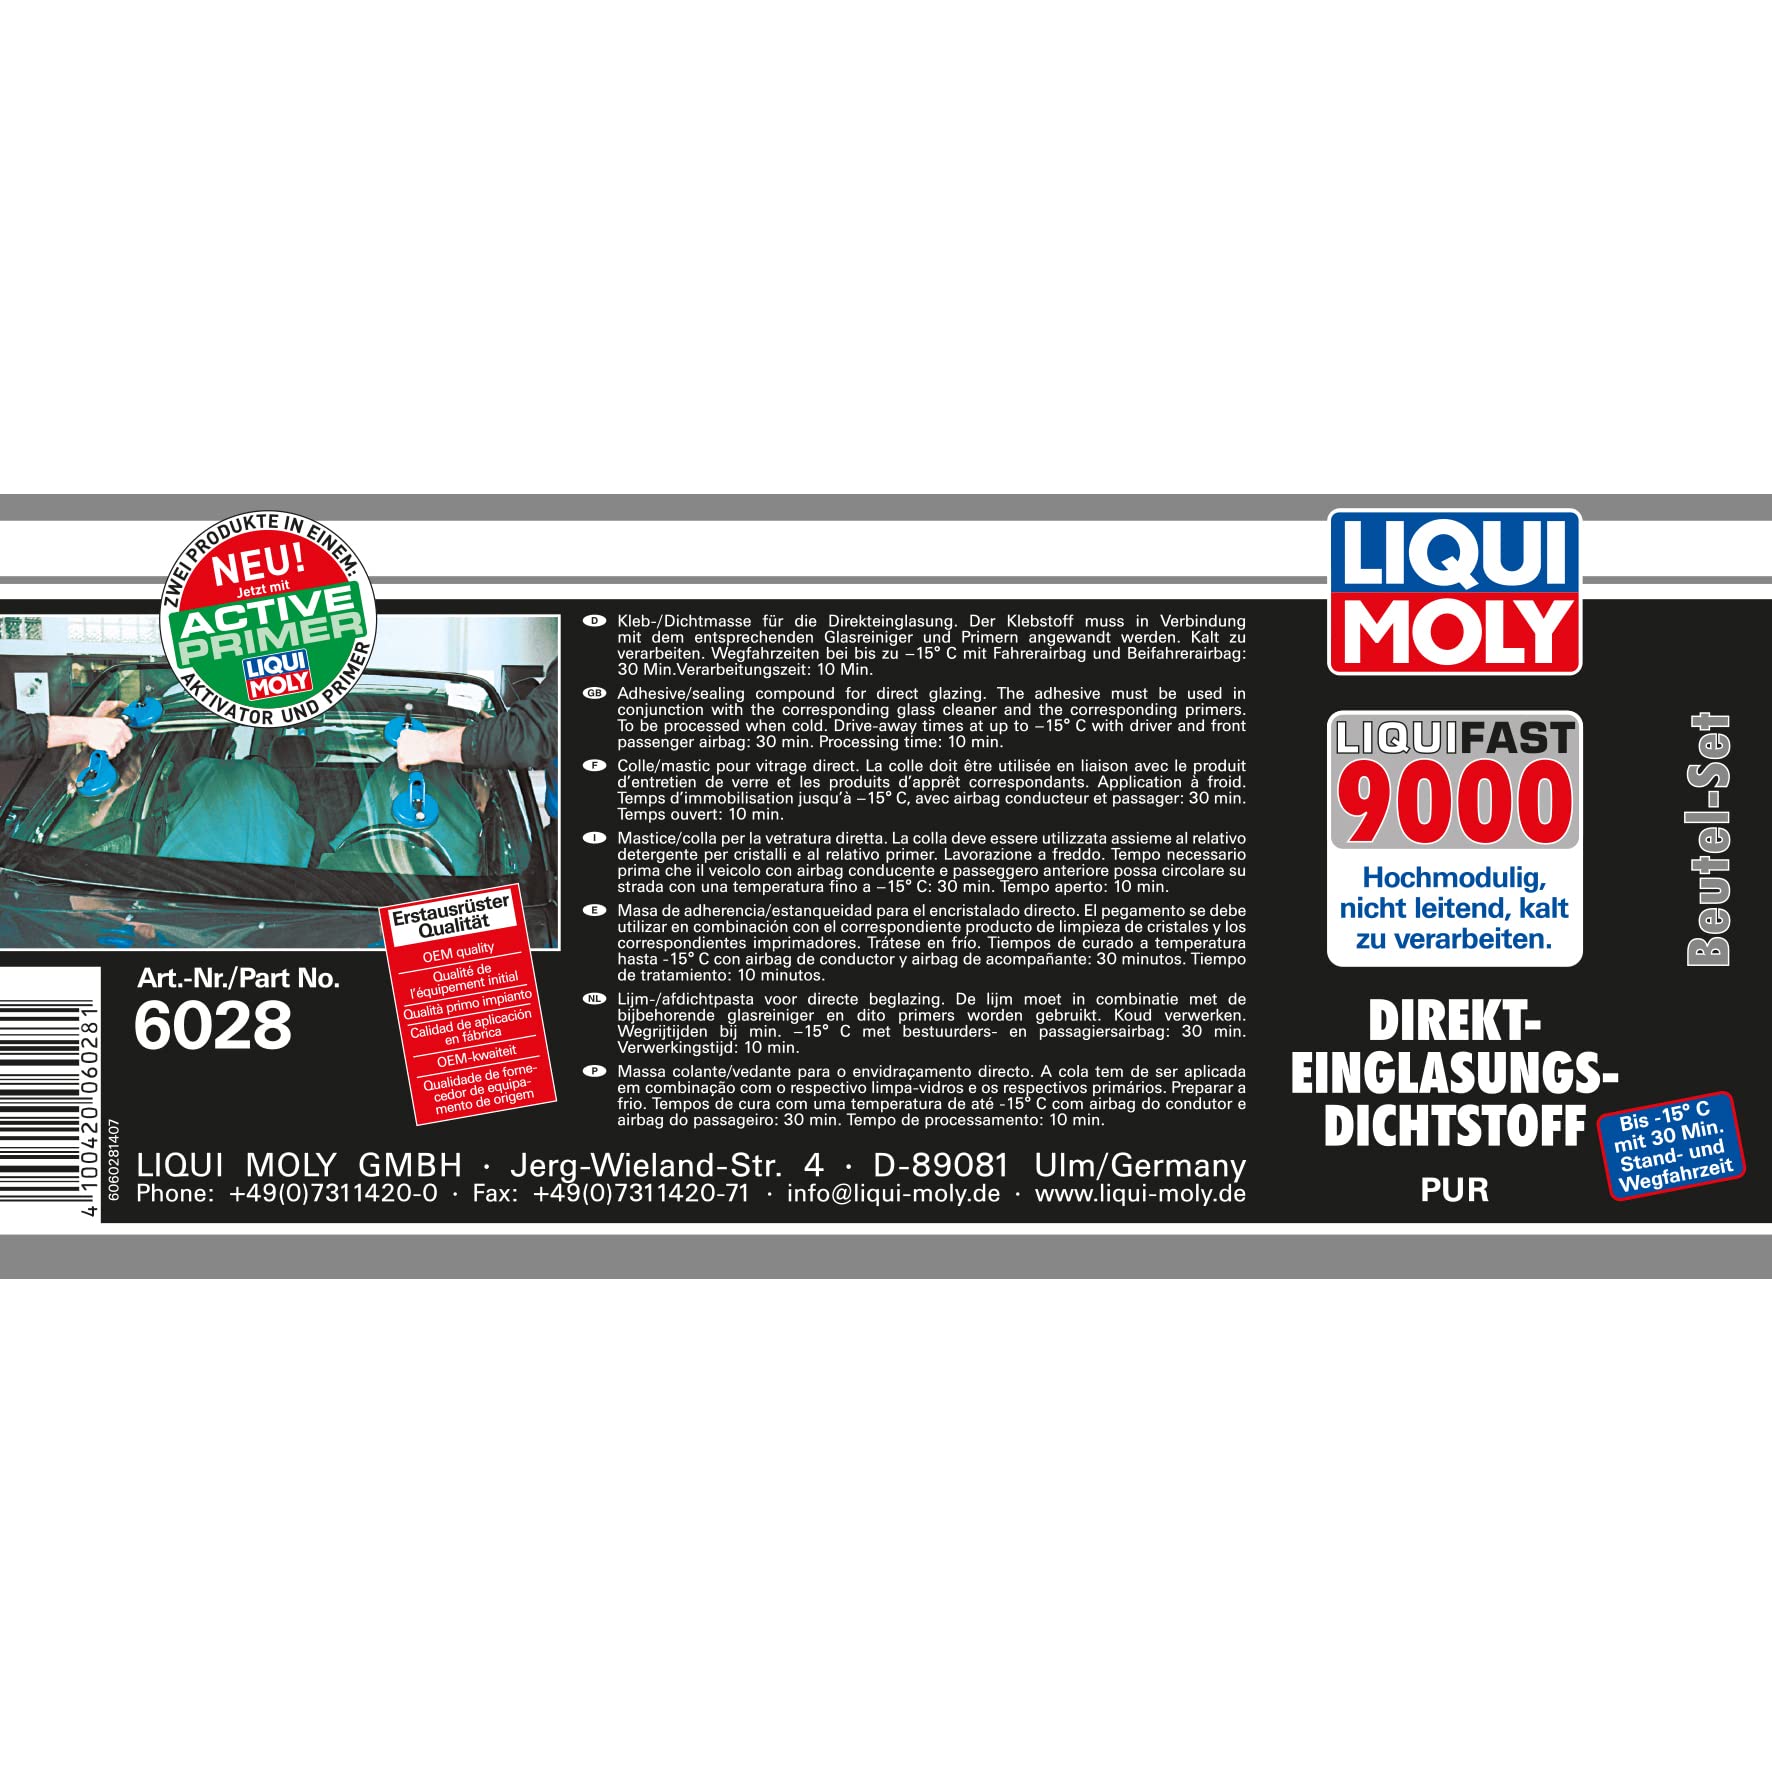 LIQUI MOLY Liquifast 9000 (Beutel-Set) | 1 Stk | Klebstoff | Art.-Nr.: 6028 von Liqui Moly